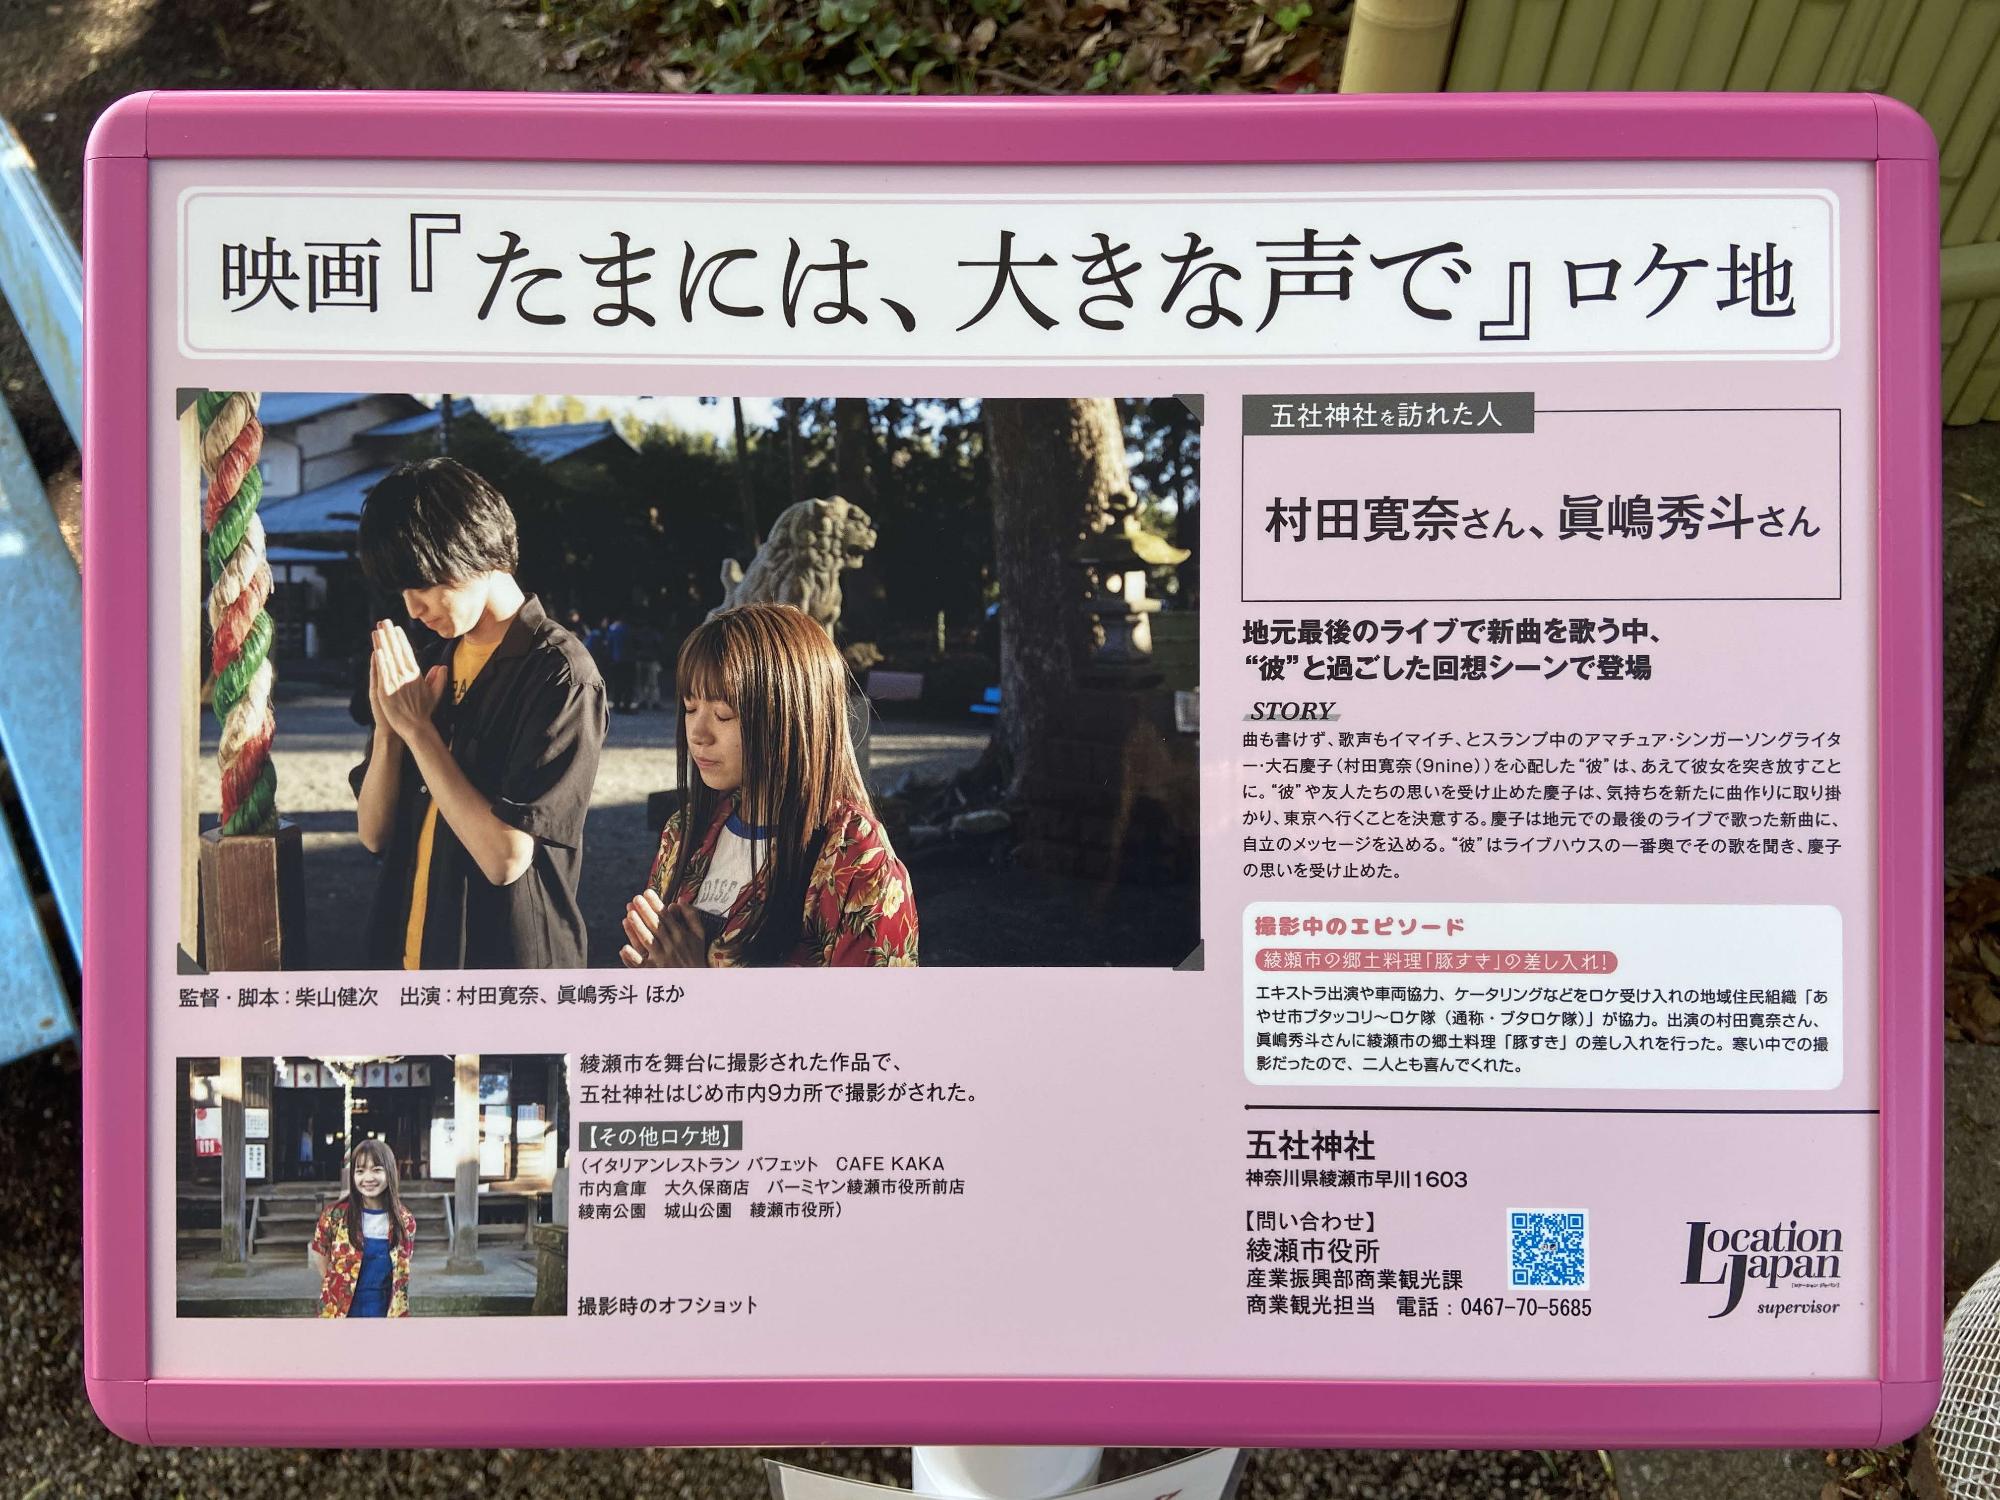 実際に五社神社で撮影された村田寛奈さんと眞嶋秀斗さんが神社を参拝しているシーンの写真や撮影中のエピソードなどがかかれているロケ地看板の写真